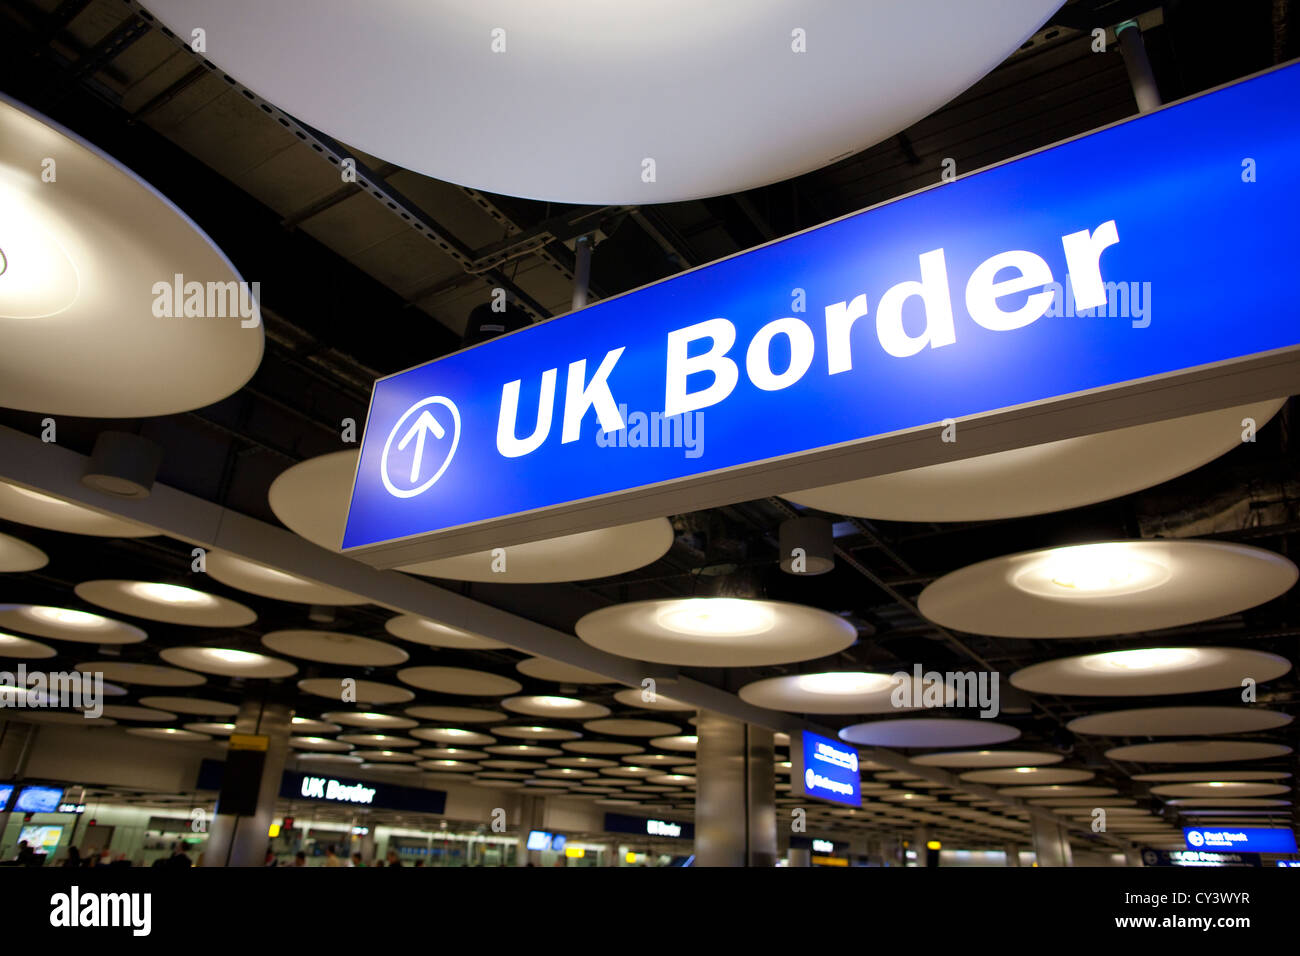 UK Border Contrôle des Passeports de l'aéroport Heathrow Terminal 5, Angleterre, Royaume-Uni, UK Banque D'Images